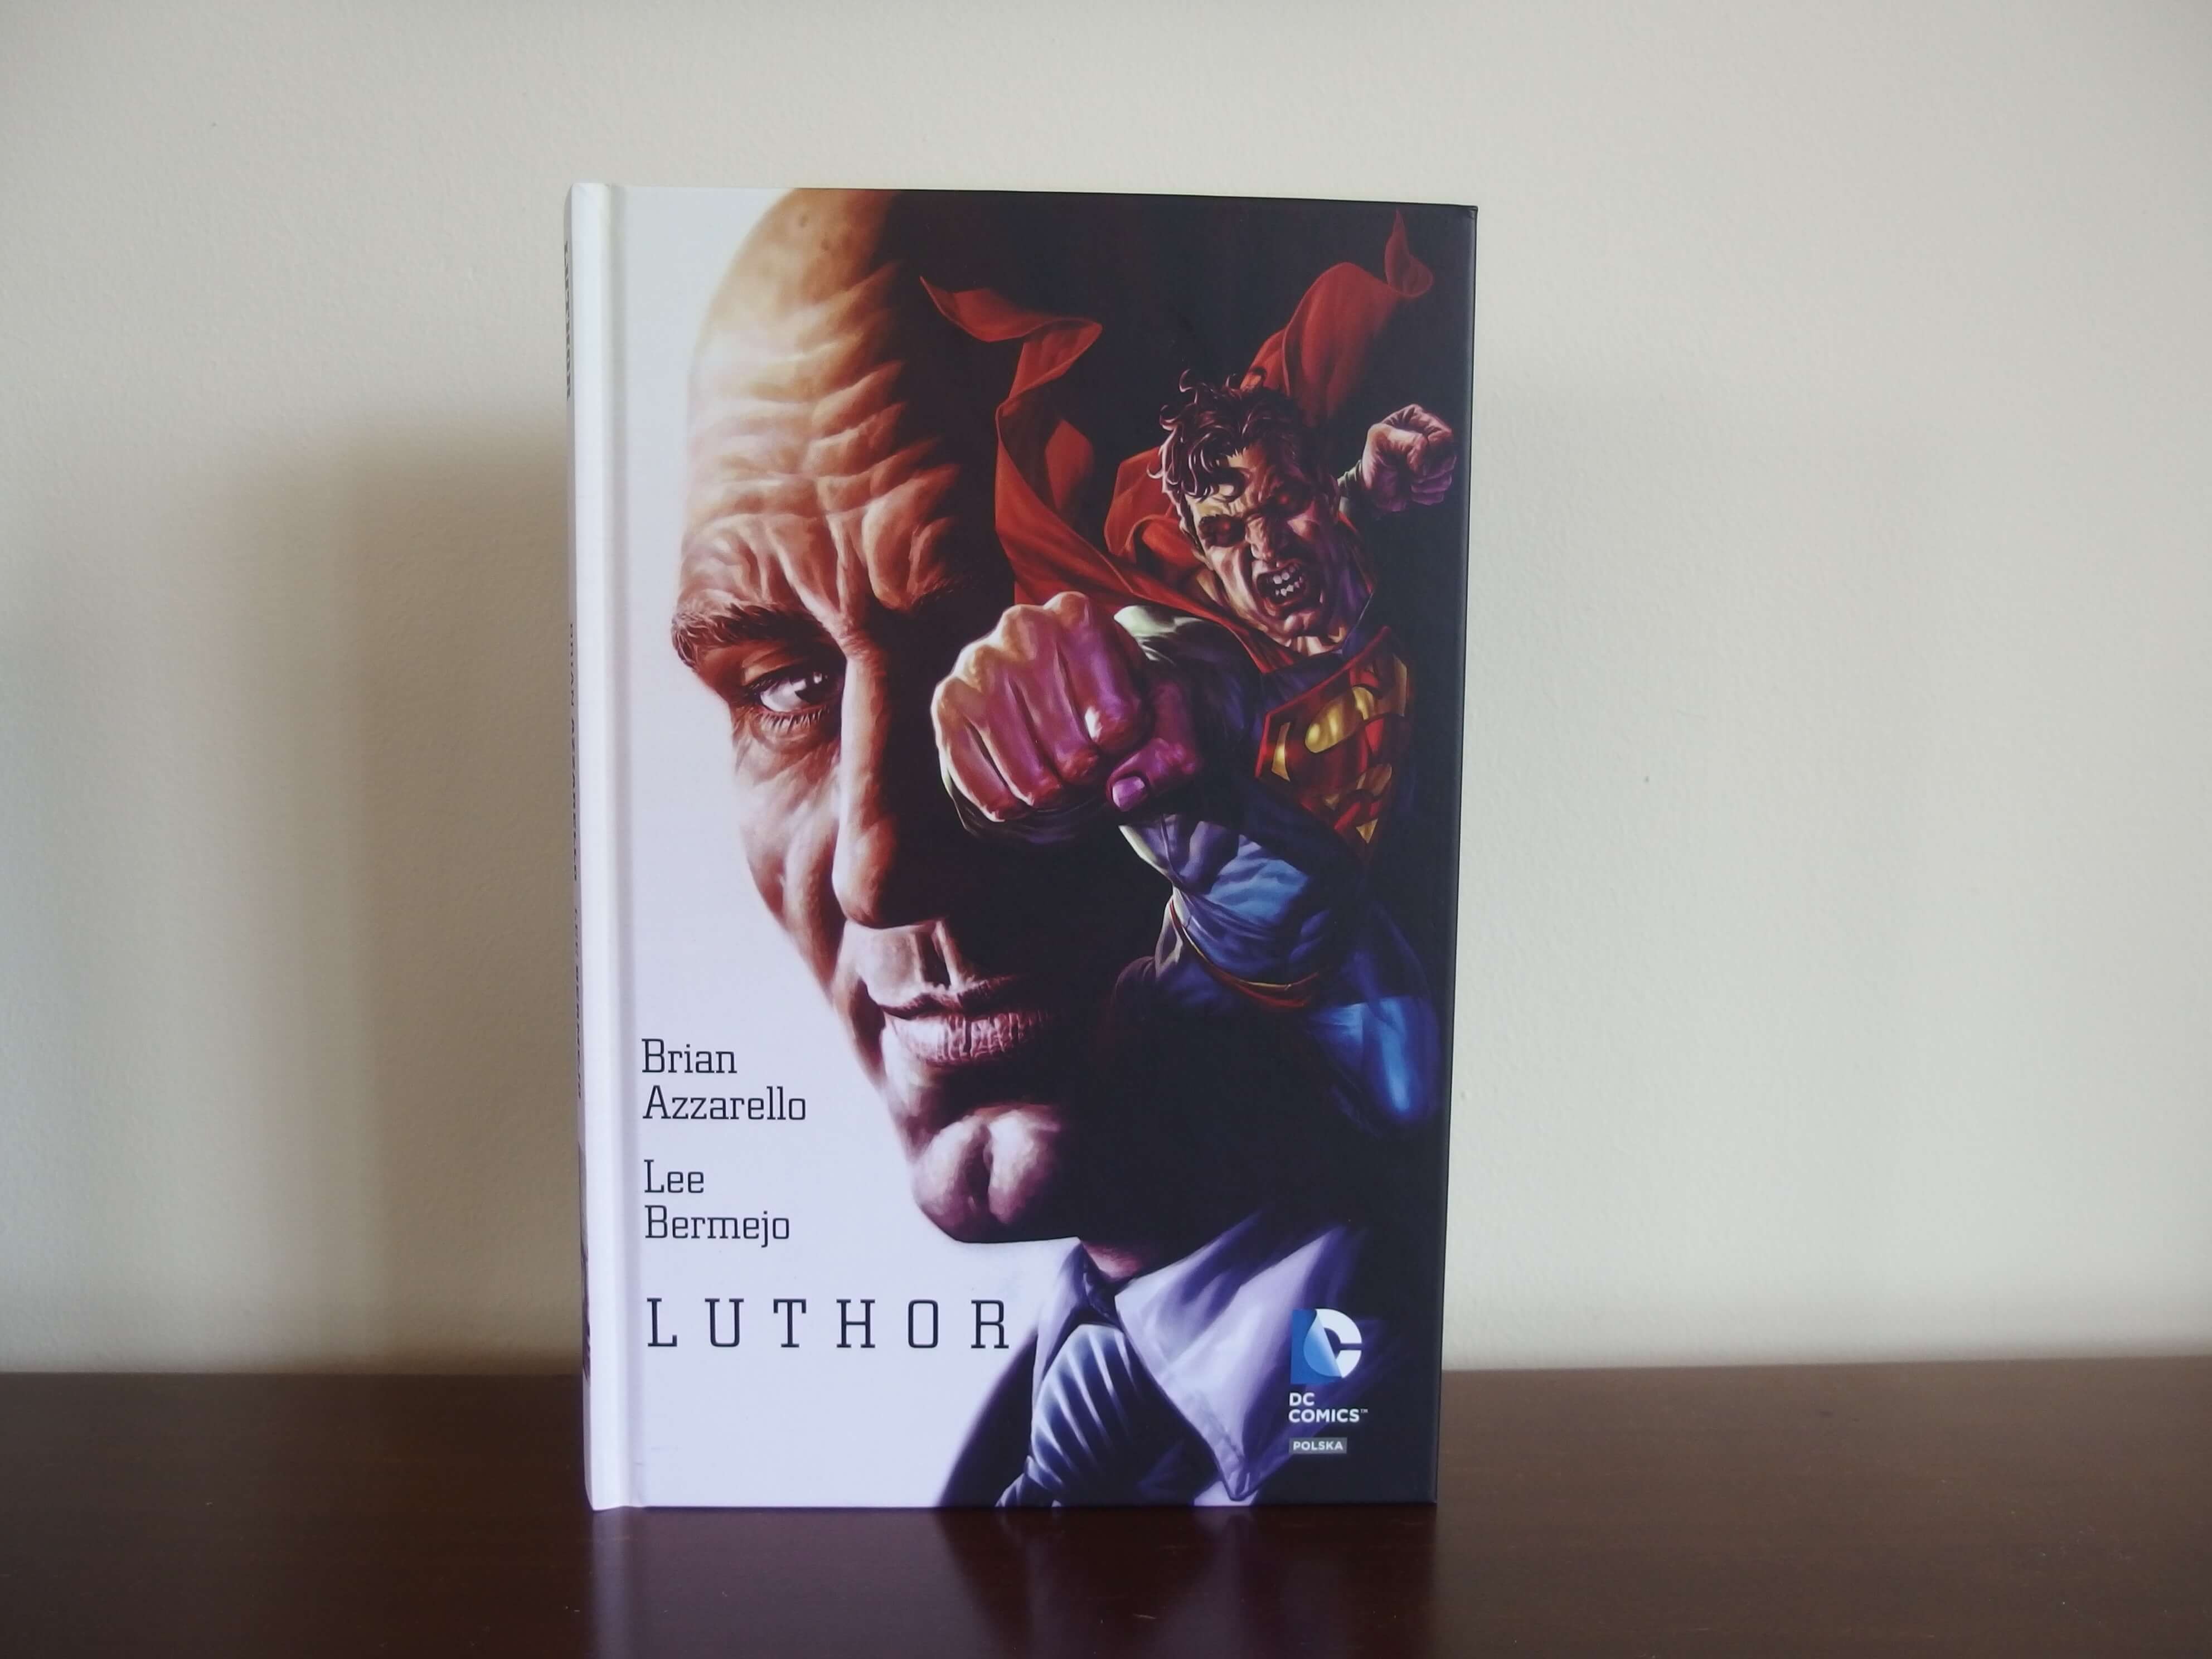 Luthor - Obrazy grozy